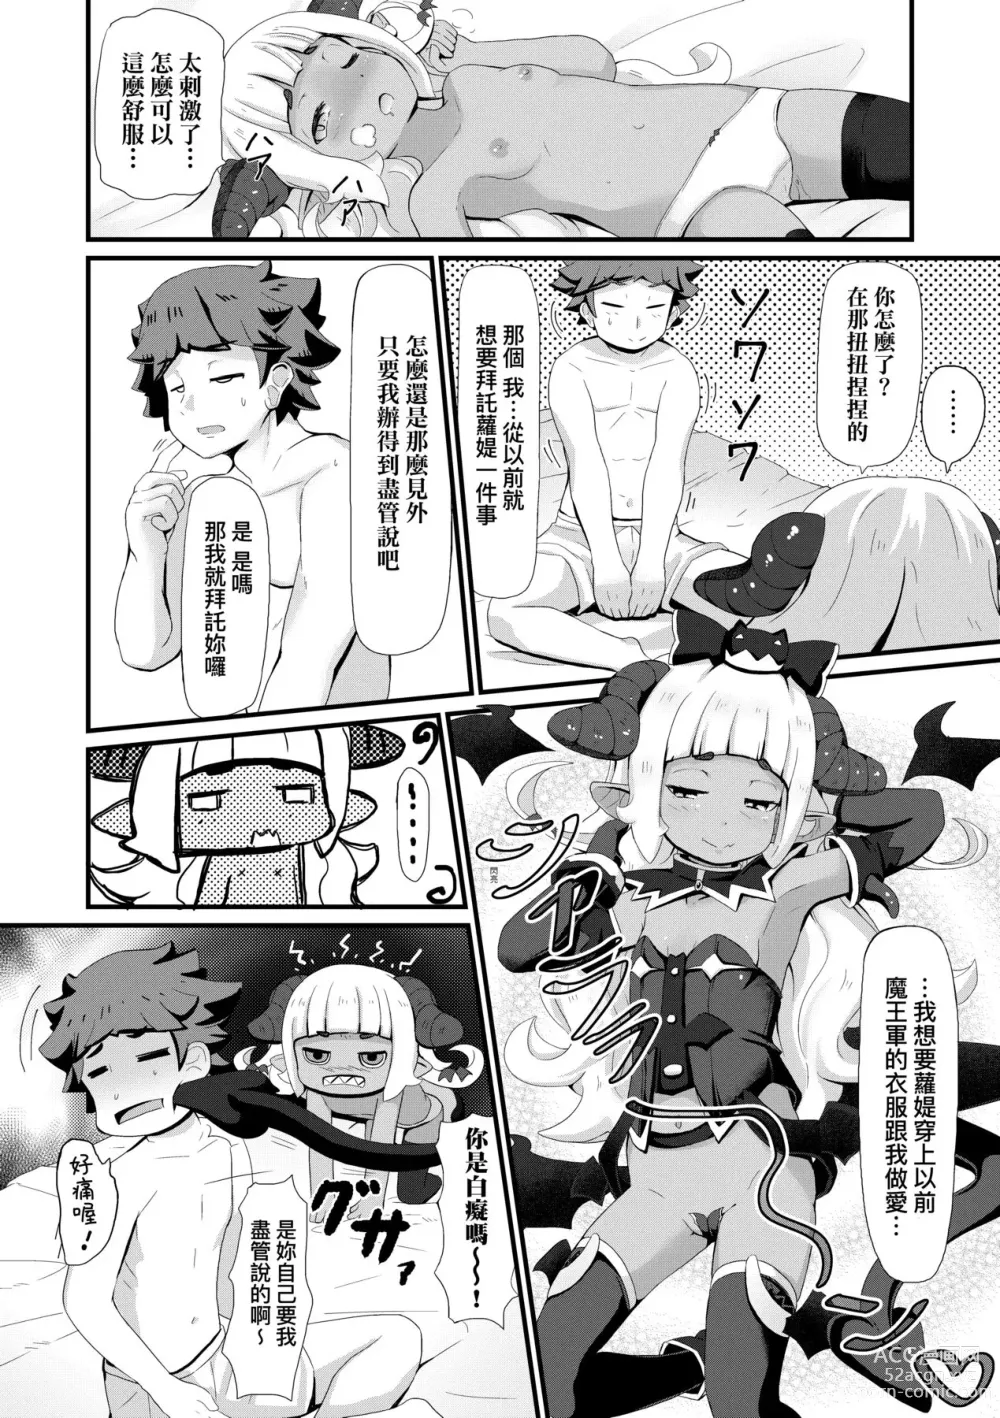 Page 165 of manga Kashi Oni Kochira (decensored)